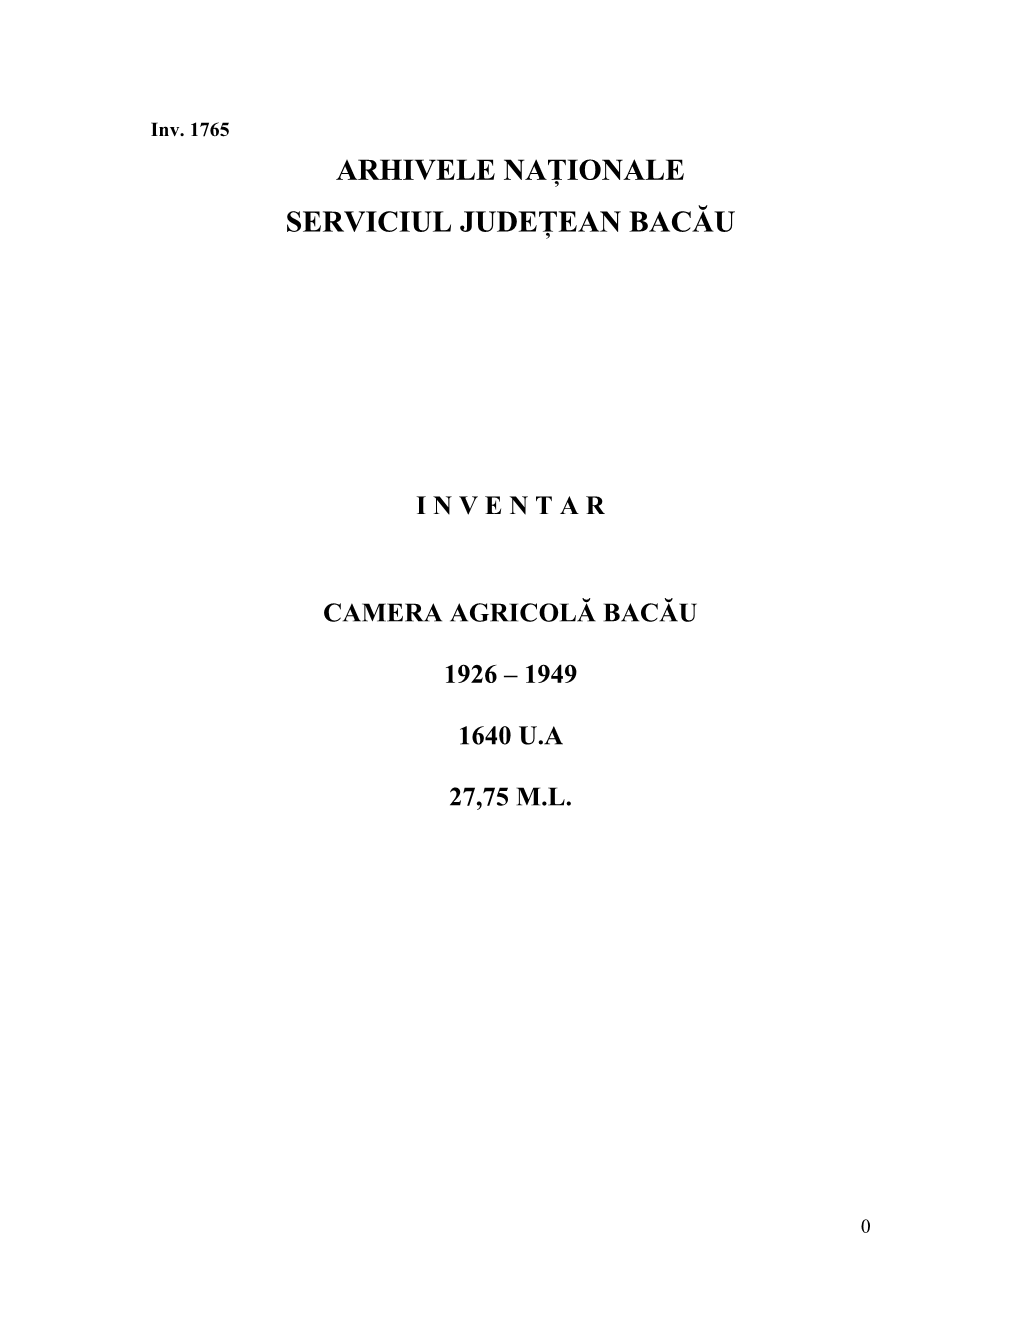 Arhivele Naţionale Serviciul Judeţean Bacău